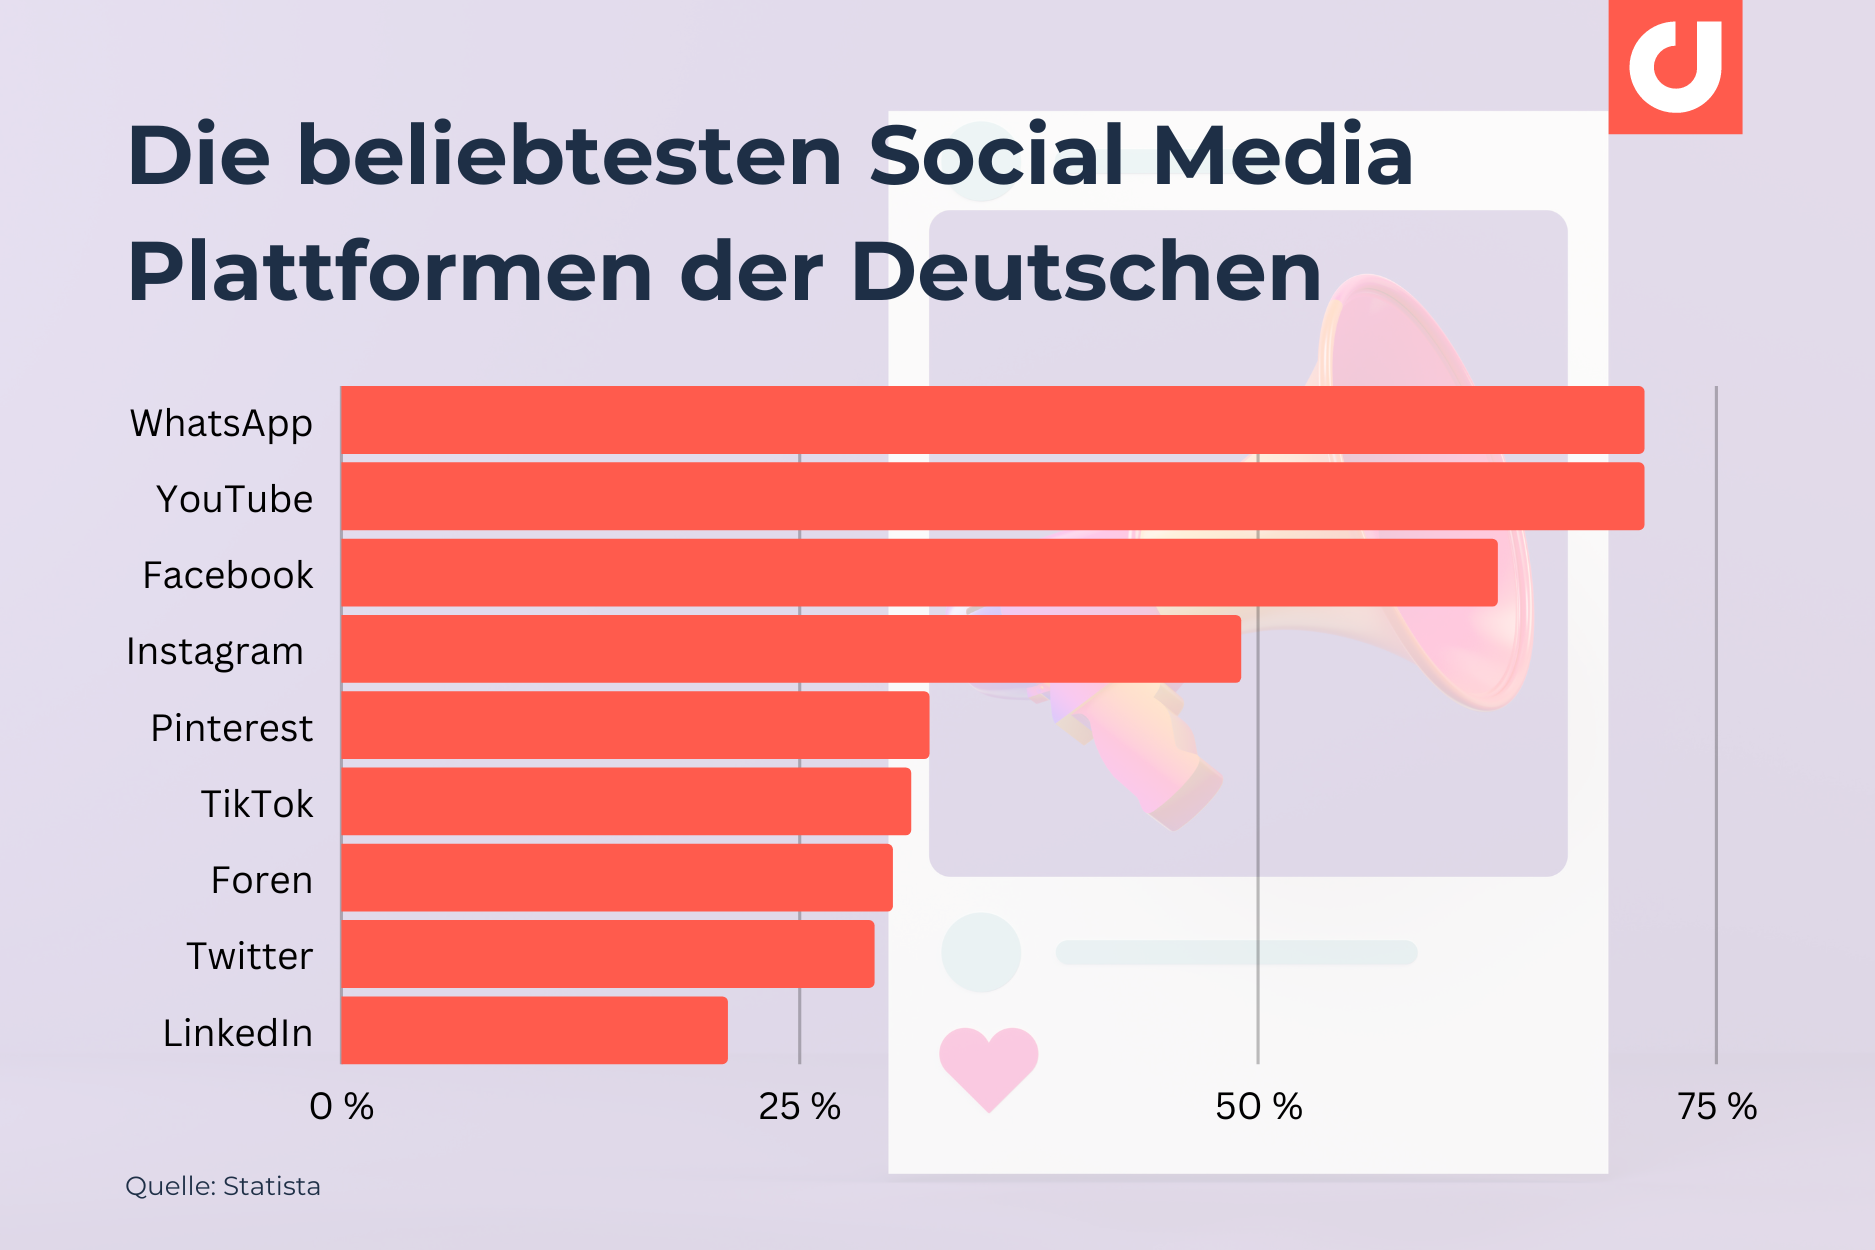 Die beliebtesten Social Media Plattformen der Deutschen